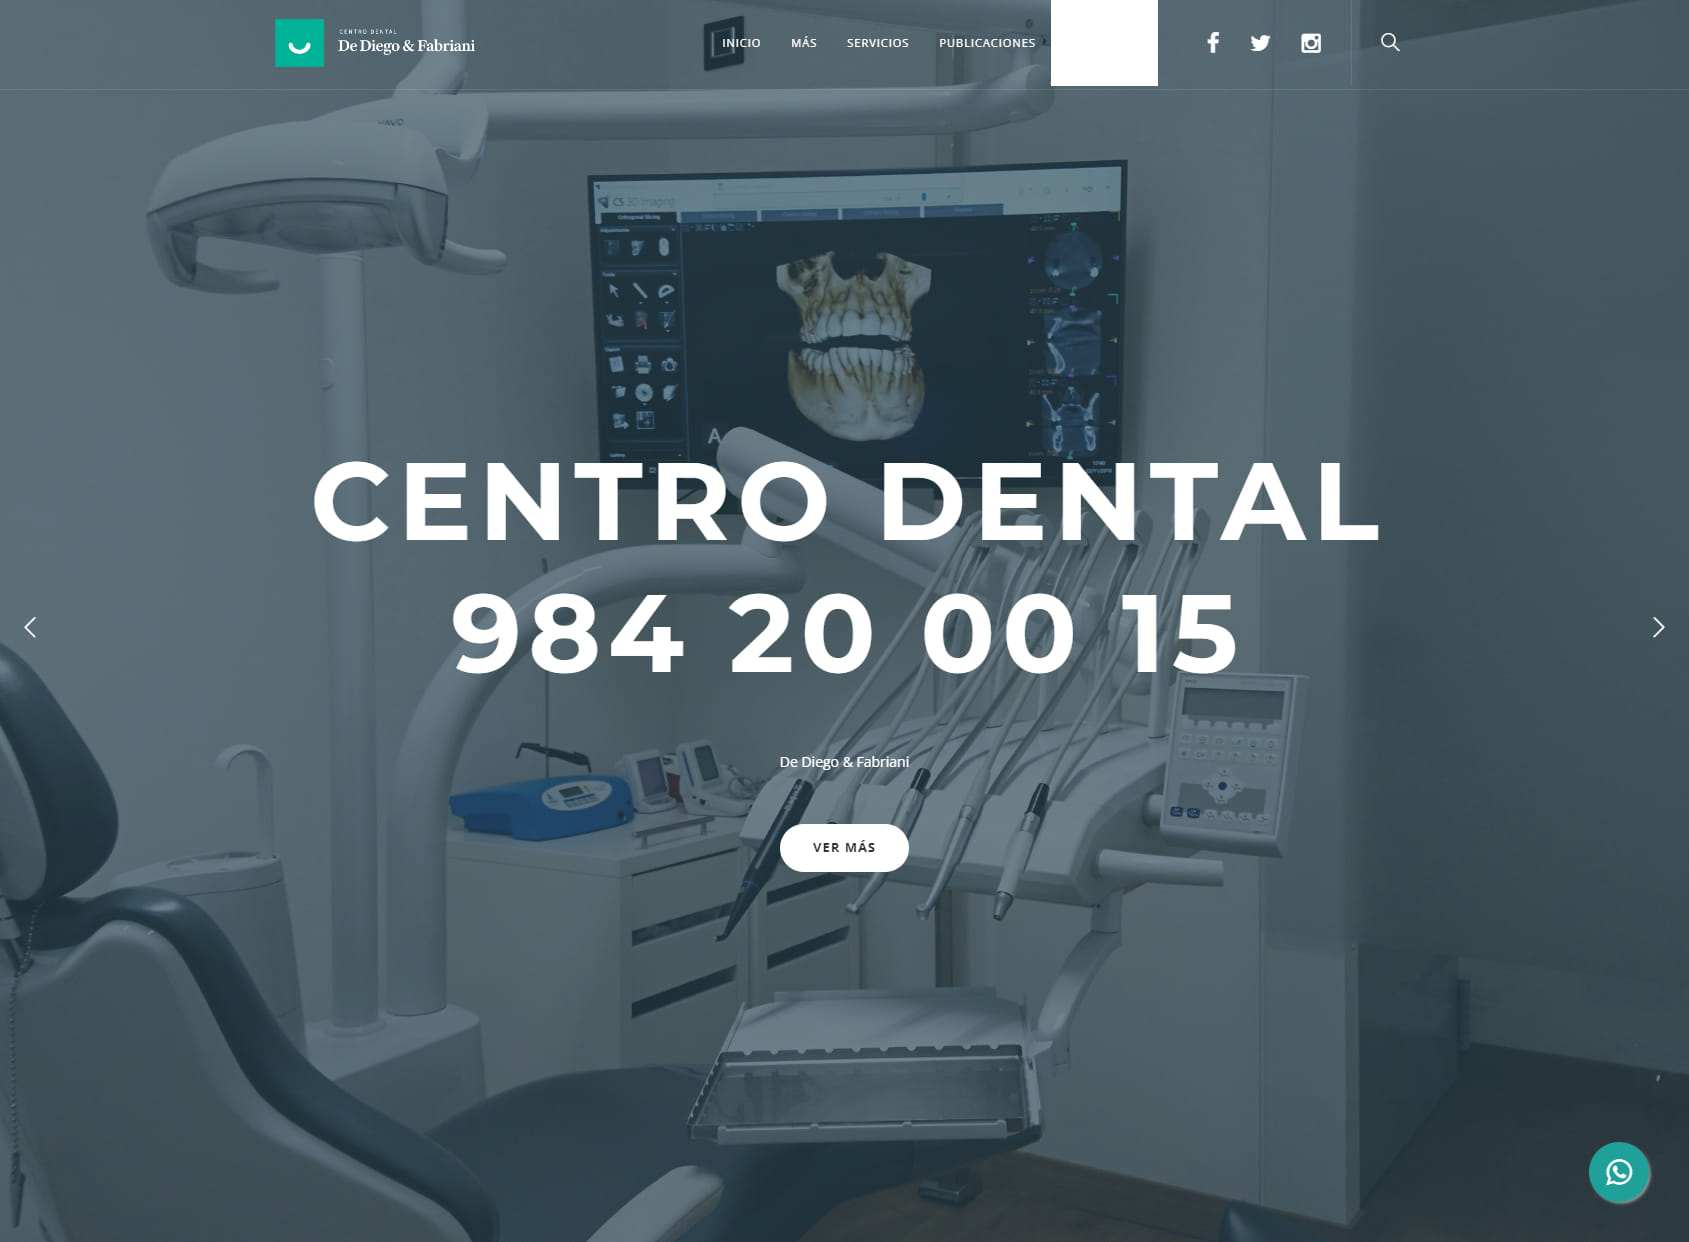 Centro Dental: De Diego & Fabriani